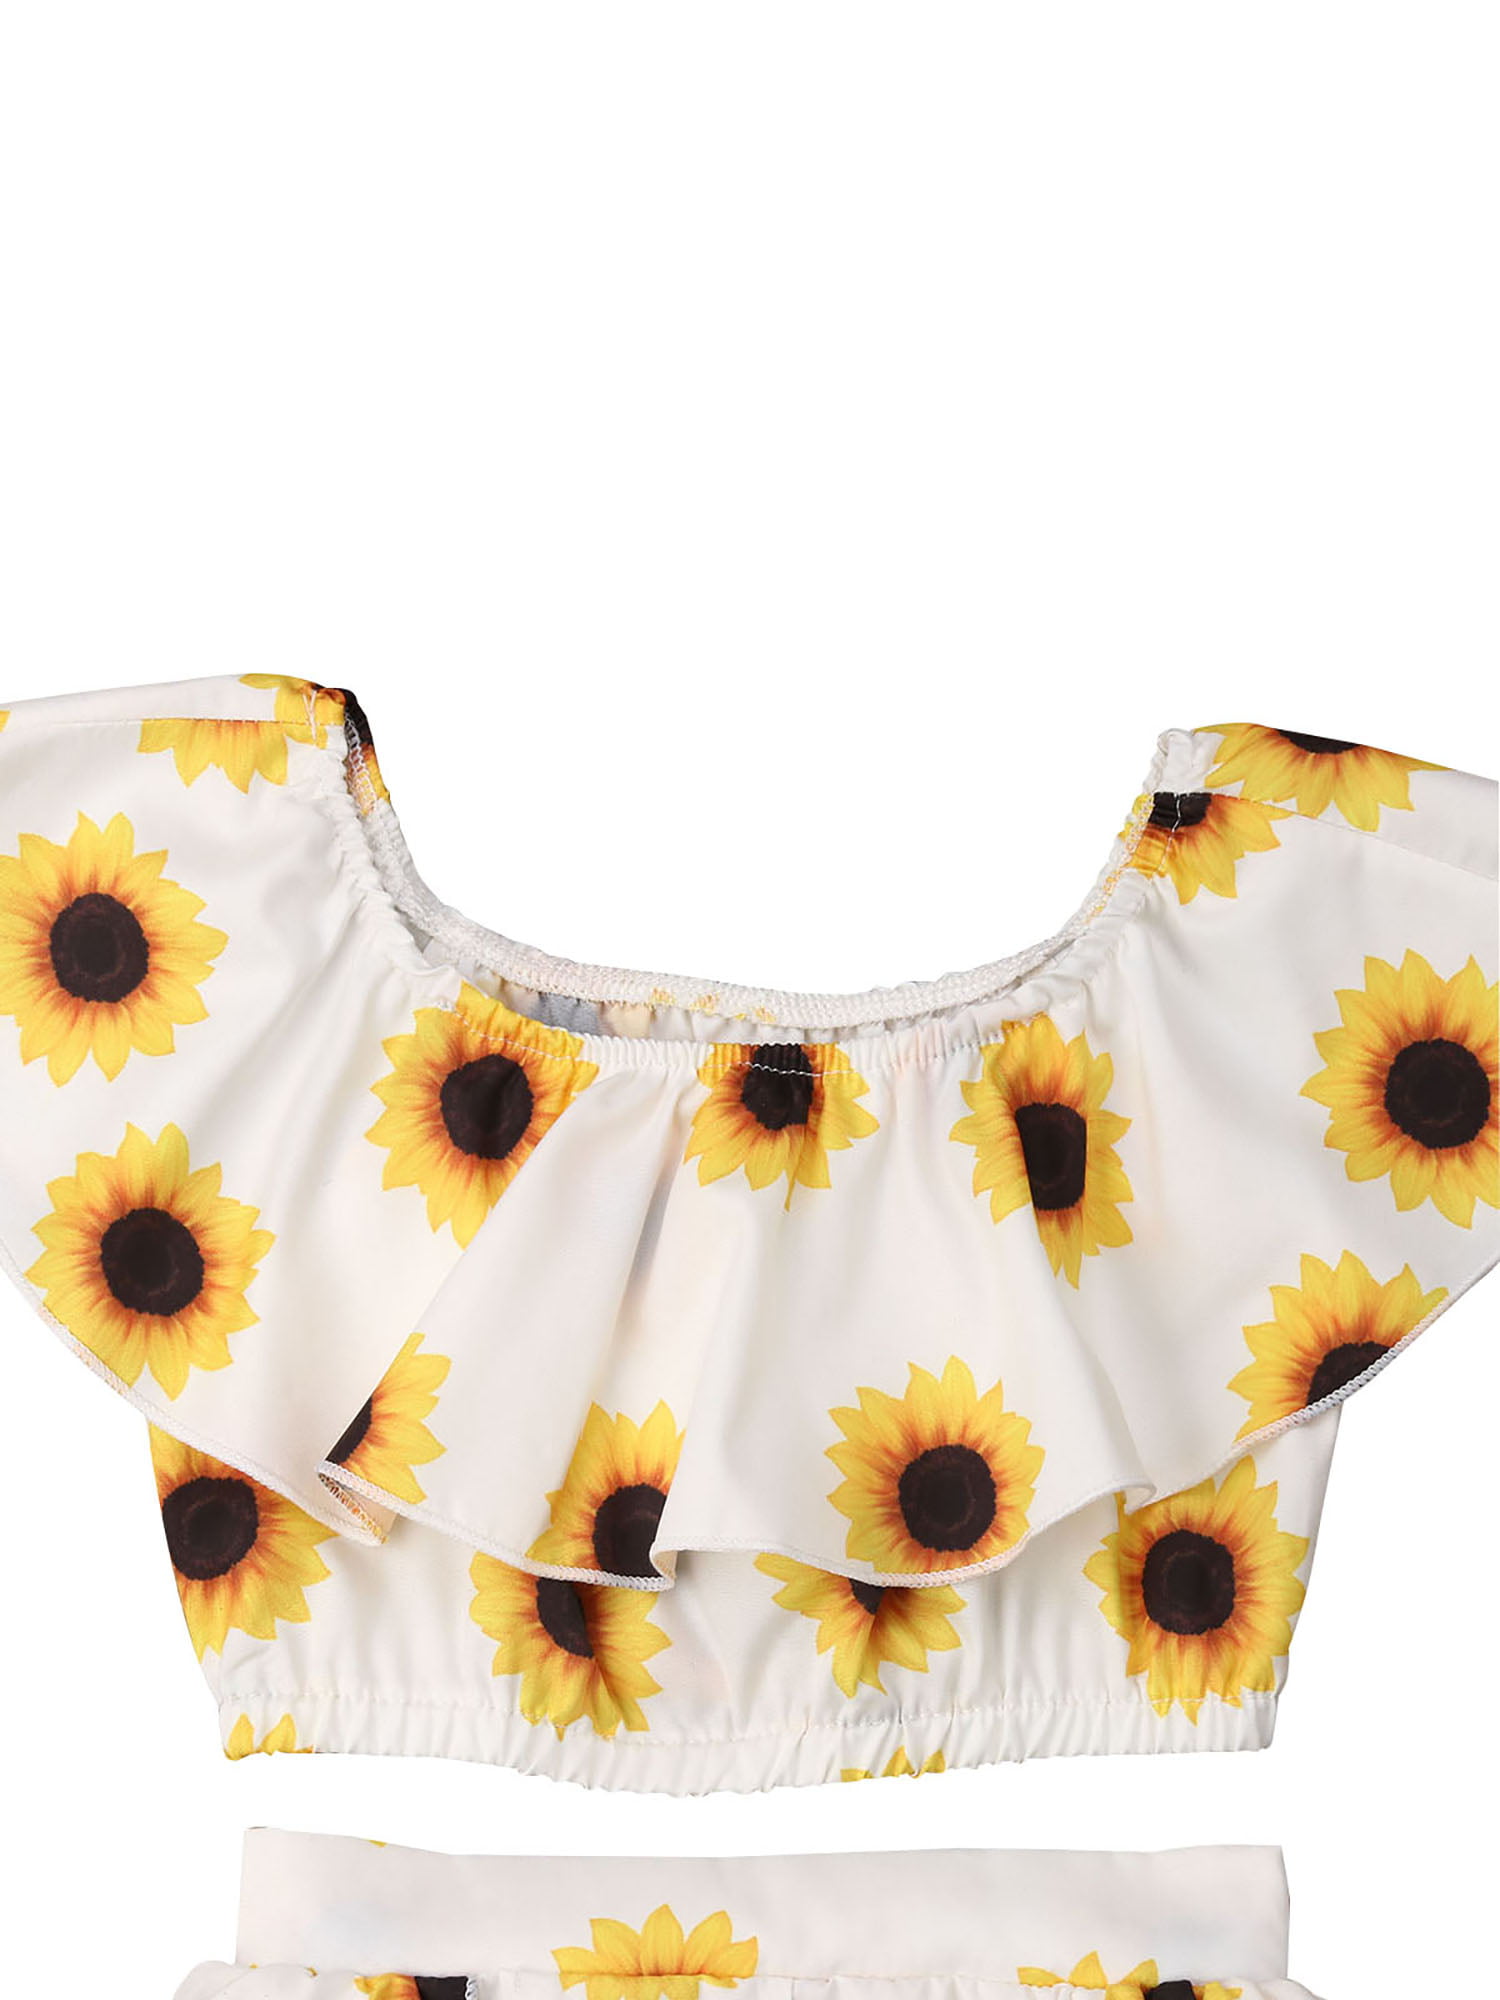 Cute Sunflower Summer Girls Crop Tops Shorts Dress Headband Outfits Clothes Set 